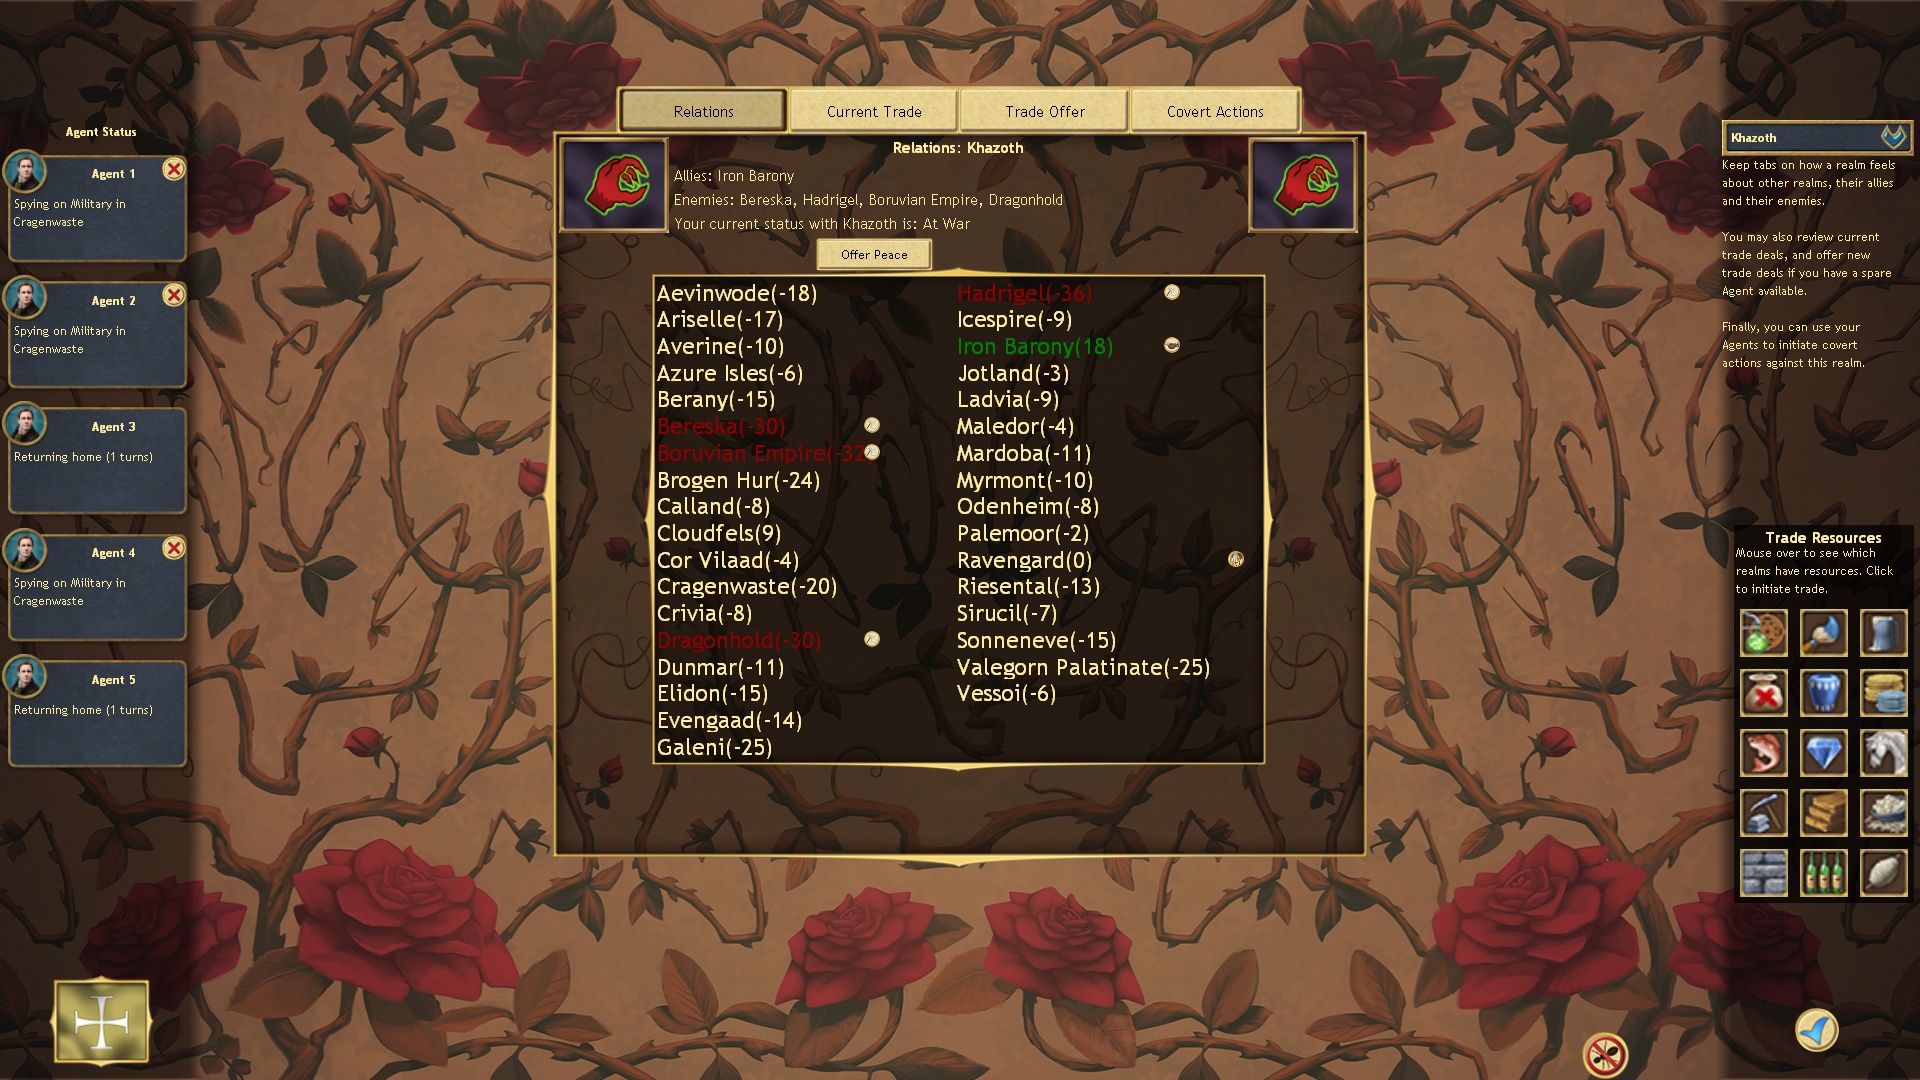 La schermata che ci mostra i rapporti diplomatici con i vari regni